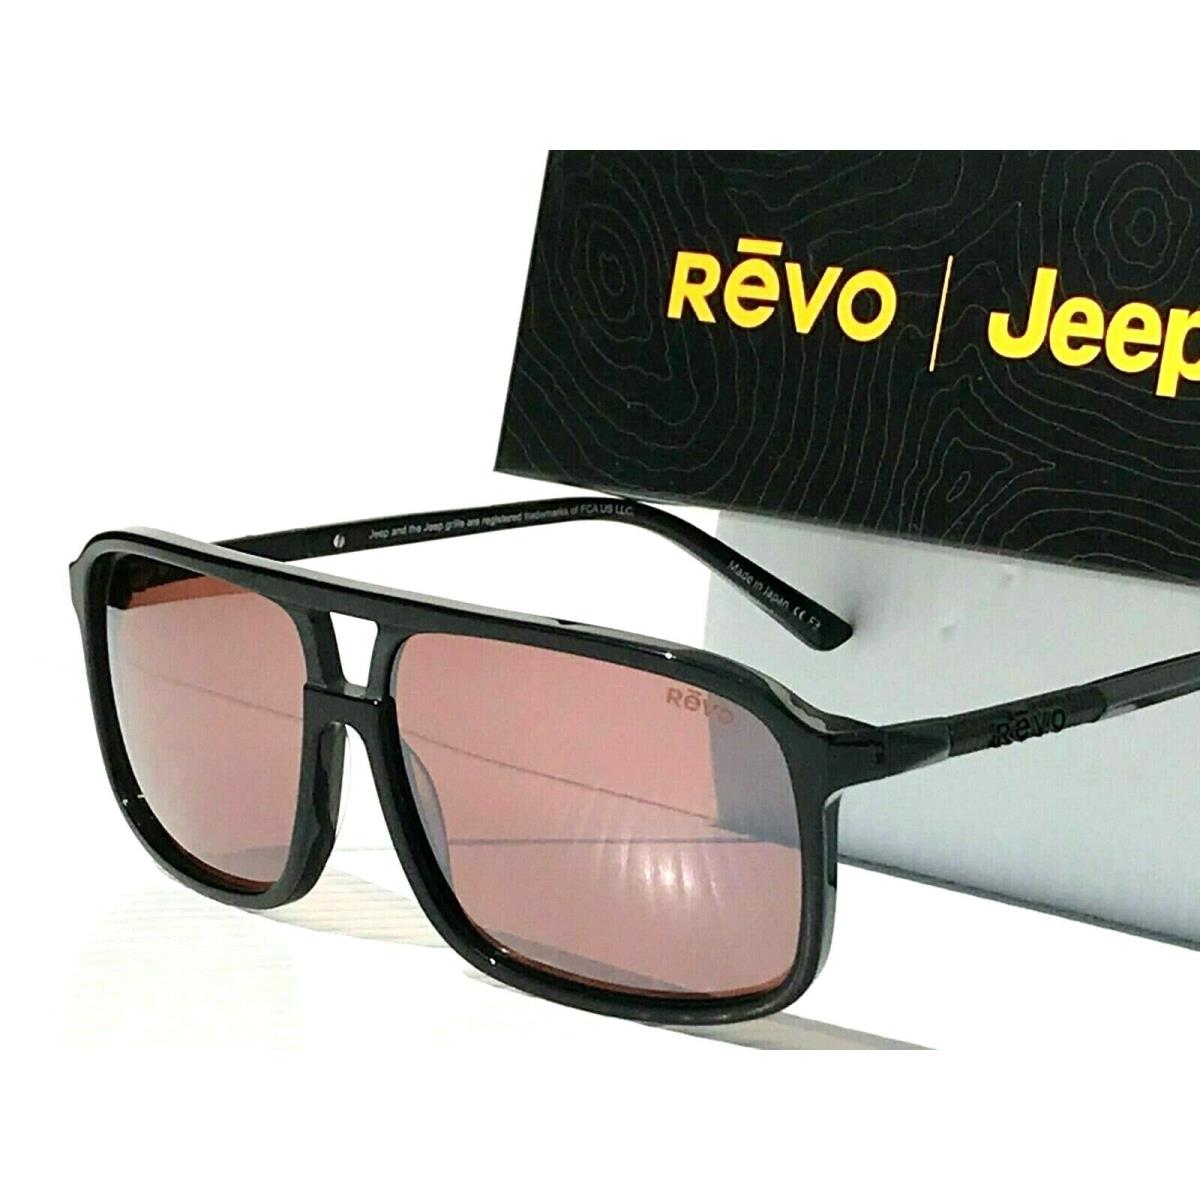 Revo sunglasses JEEP Desert - Black Frame, Rose Lens